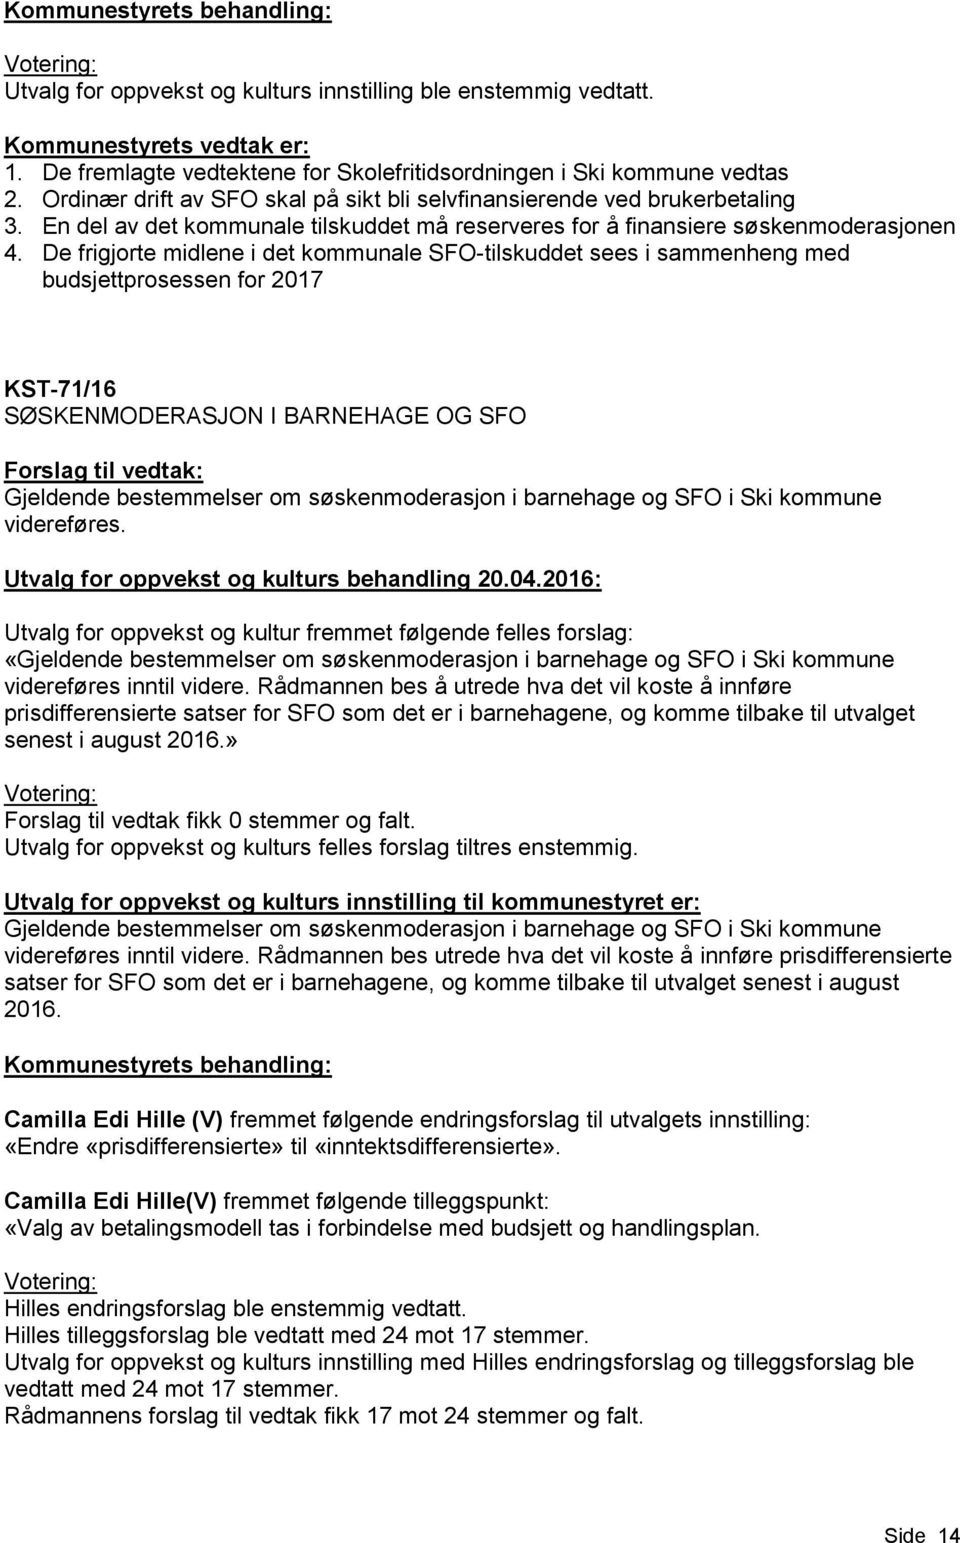 De frigjorte midlene i det kommunale SFO-tilskuddet sees i sammenheng med budsjettprosessen for 2017 KST-71/16 SØSKENMODERASJON I BARNEHAGE OG SFO Gjeldende bestemmelser om søskenmoderasjon i